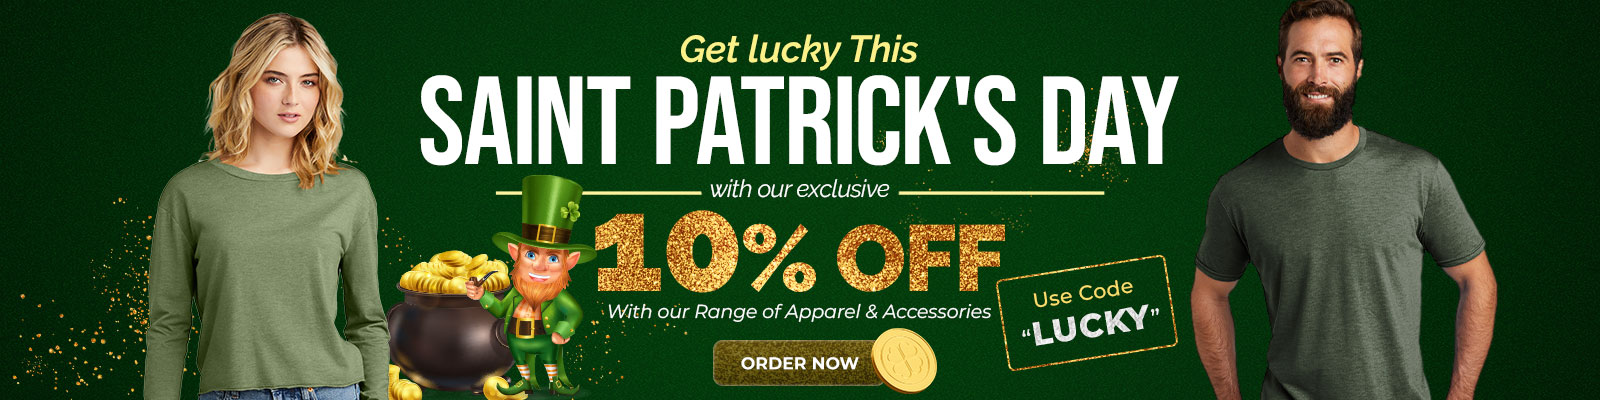 St-Patricks-banner.jpg